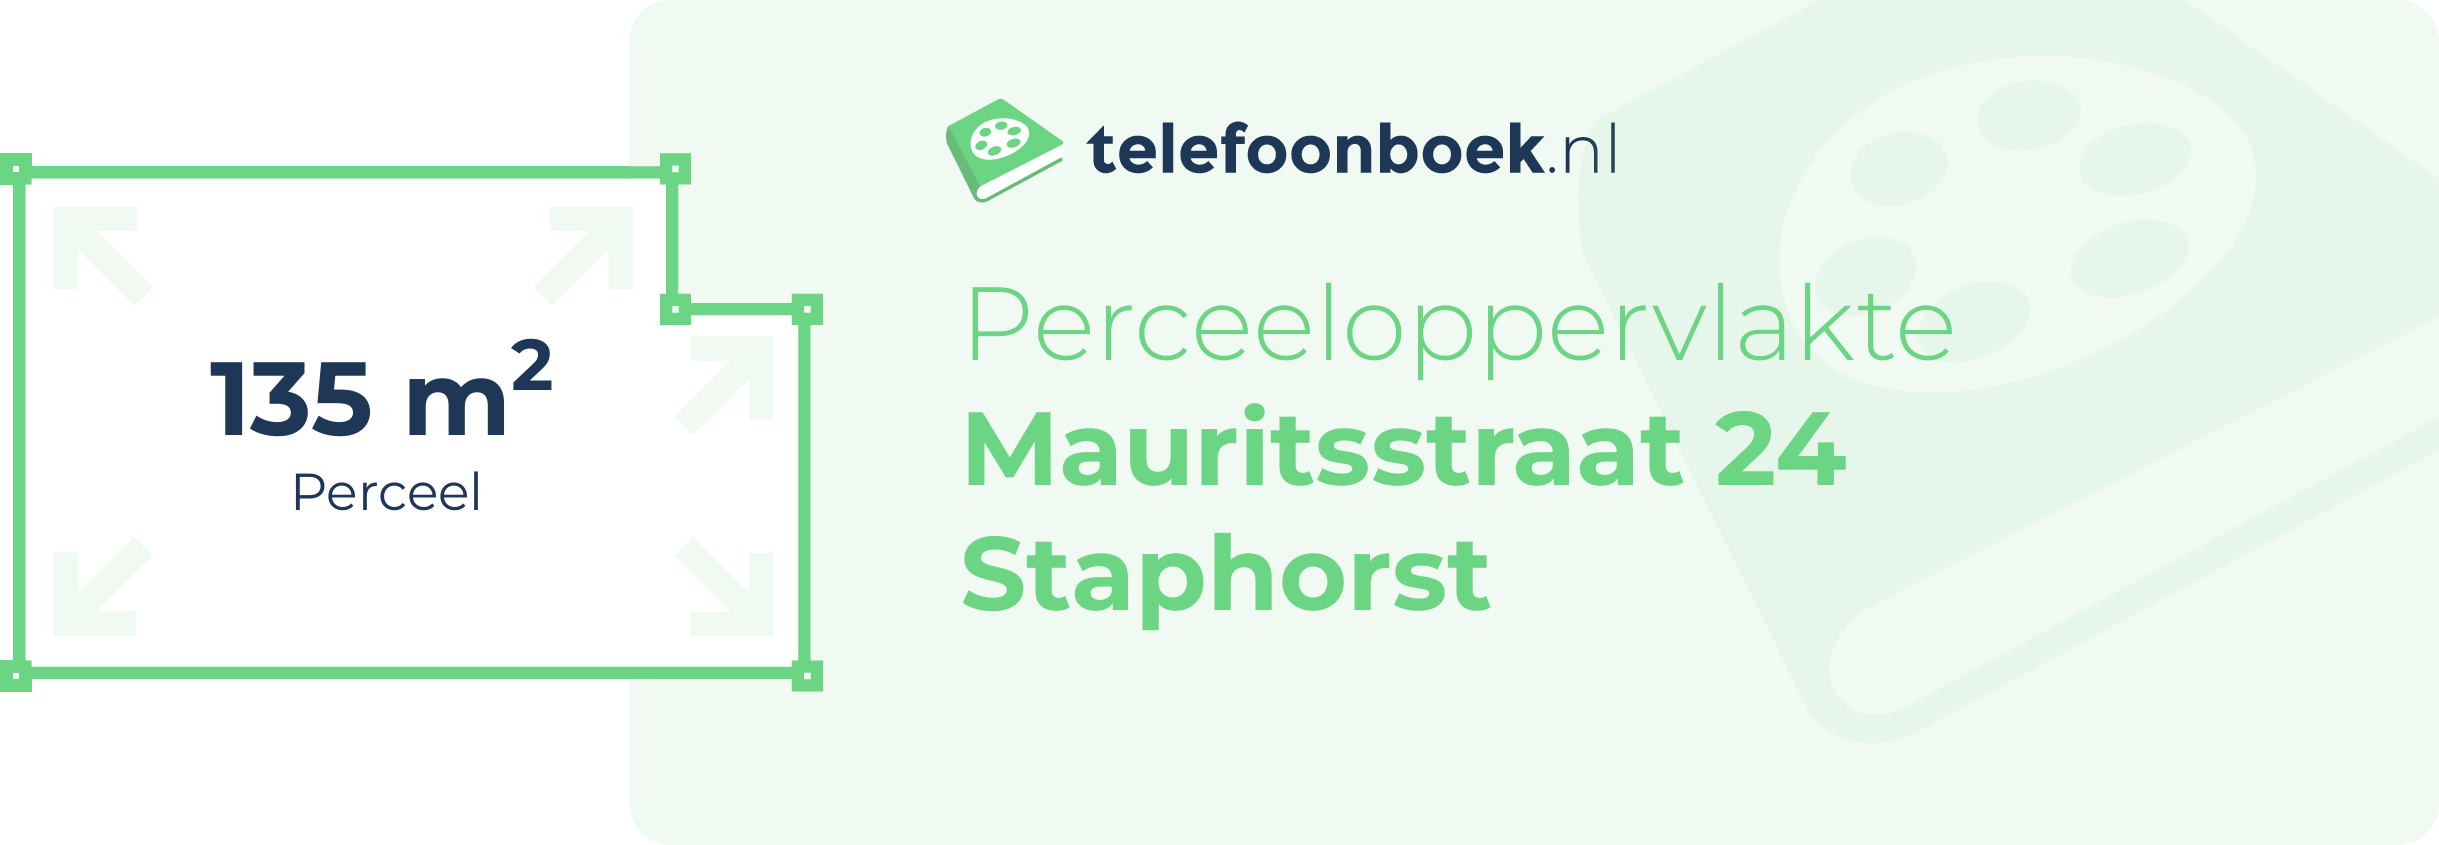 Perceeloppervlakte Mauritsstraat 24 Staphorst